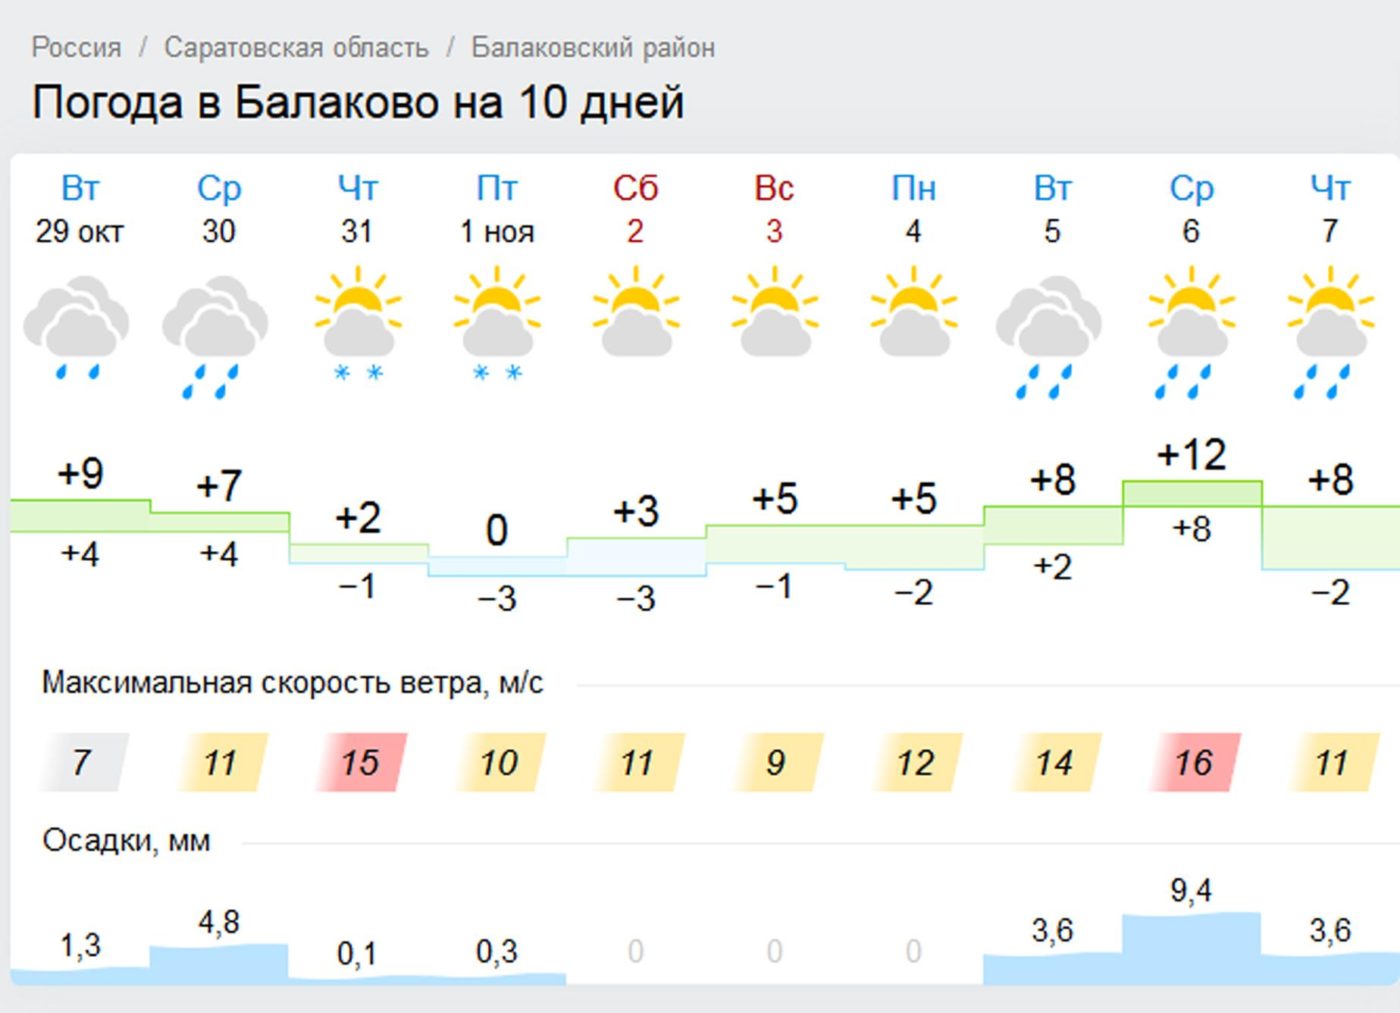 Погода завтра в 12 часов. Погода в Саратове. Погода в Балаково. Погода на завтра. Гисметео.